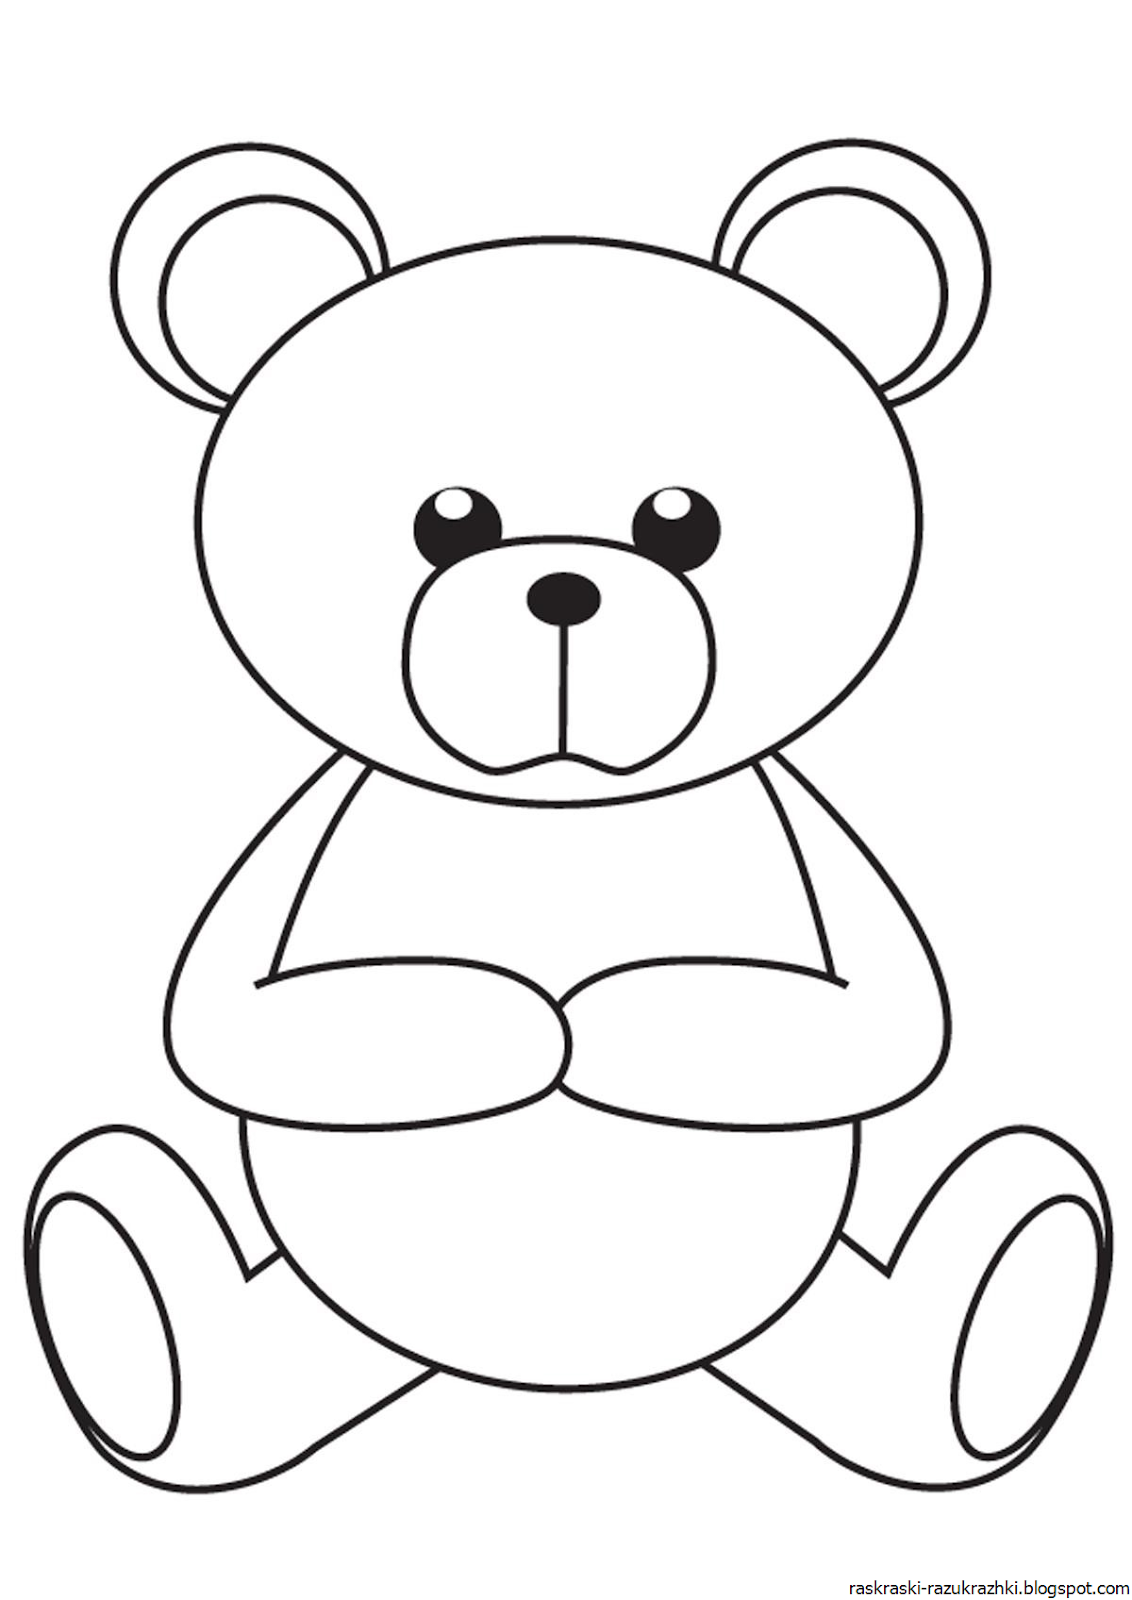 Раскраска игрушка картинка. Раскраска "мишки". Мишка раскраска для детей. Медведь раскраска для детей. Медвежонок раскраска для детей.